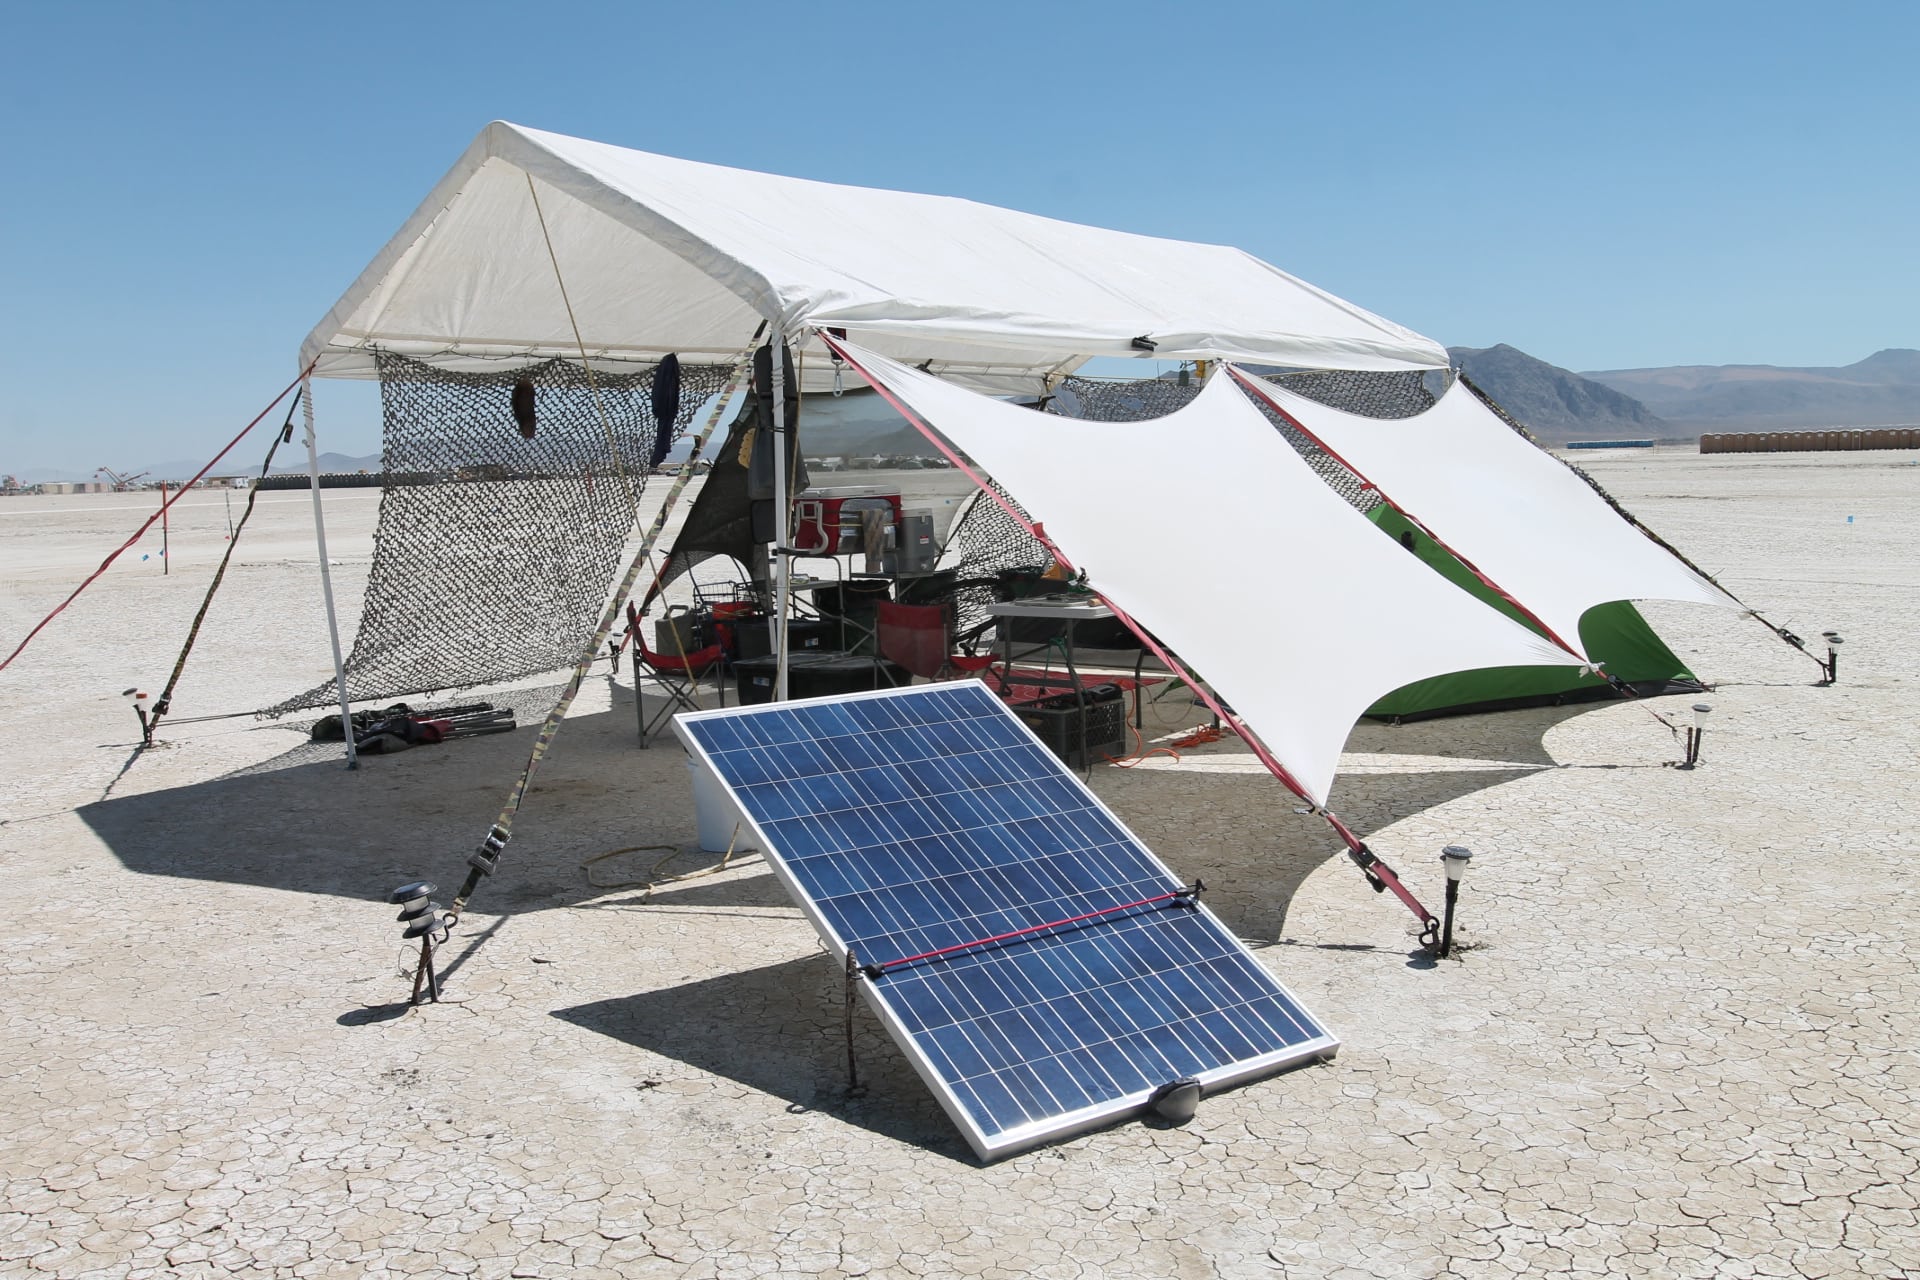 เทศกาลดนตรีอย่าง Burning Man หันมาใช้พลังงานแสงอาทิตย์แทนการใช้เครื่องปั่นไฟ